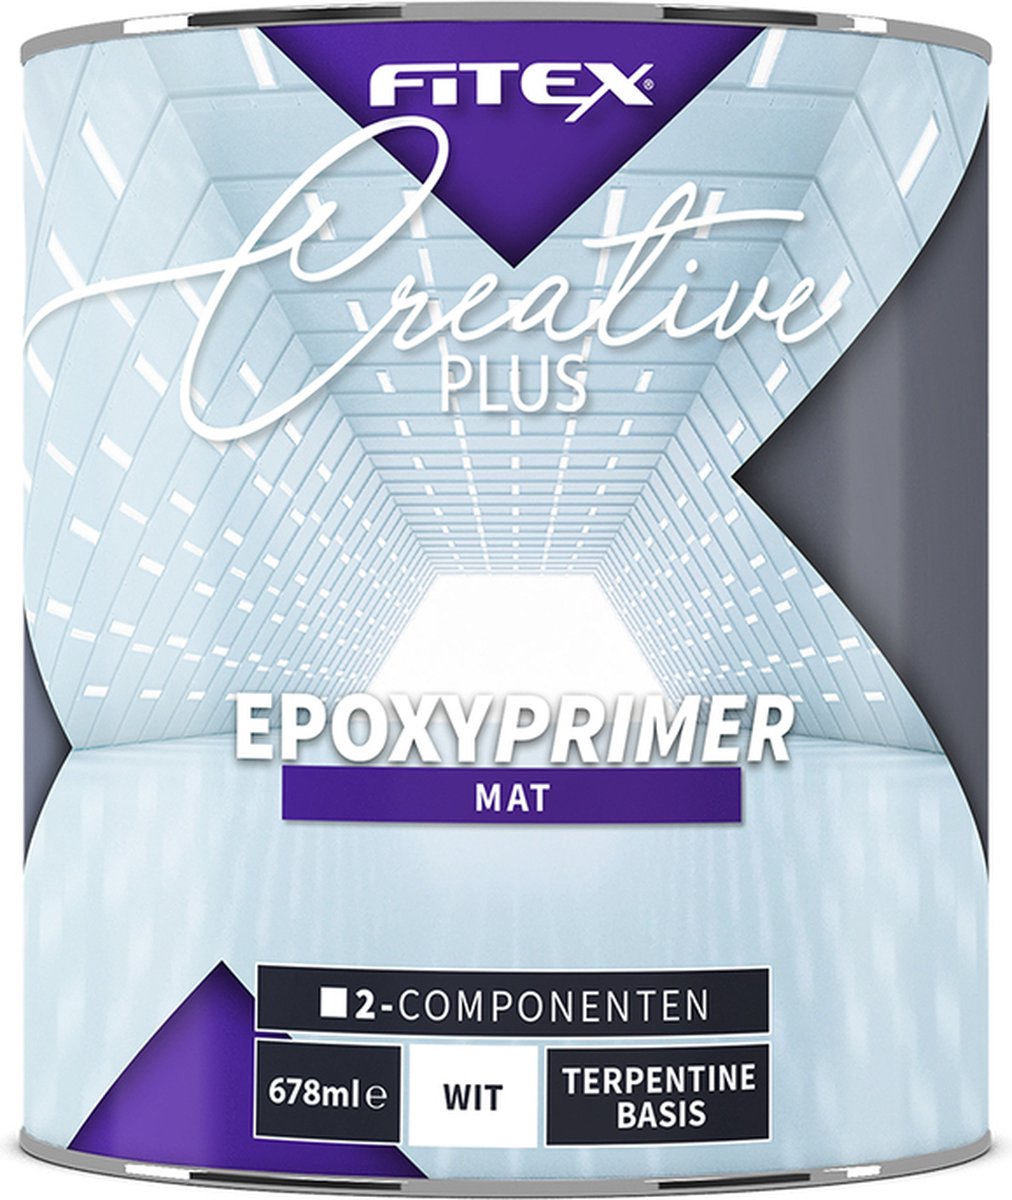 Fitex Creative+ Industriële Epoxy Primer 2-Componenten - Grondverf - Dekkend - Binnen en buiten - Terpentine basis - Mat - Grijs